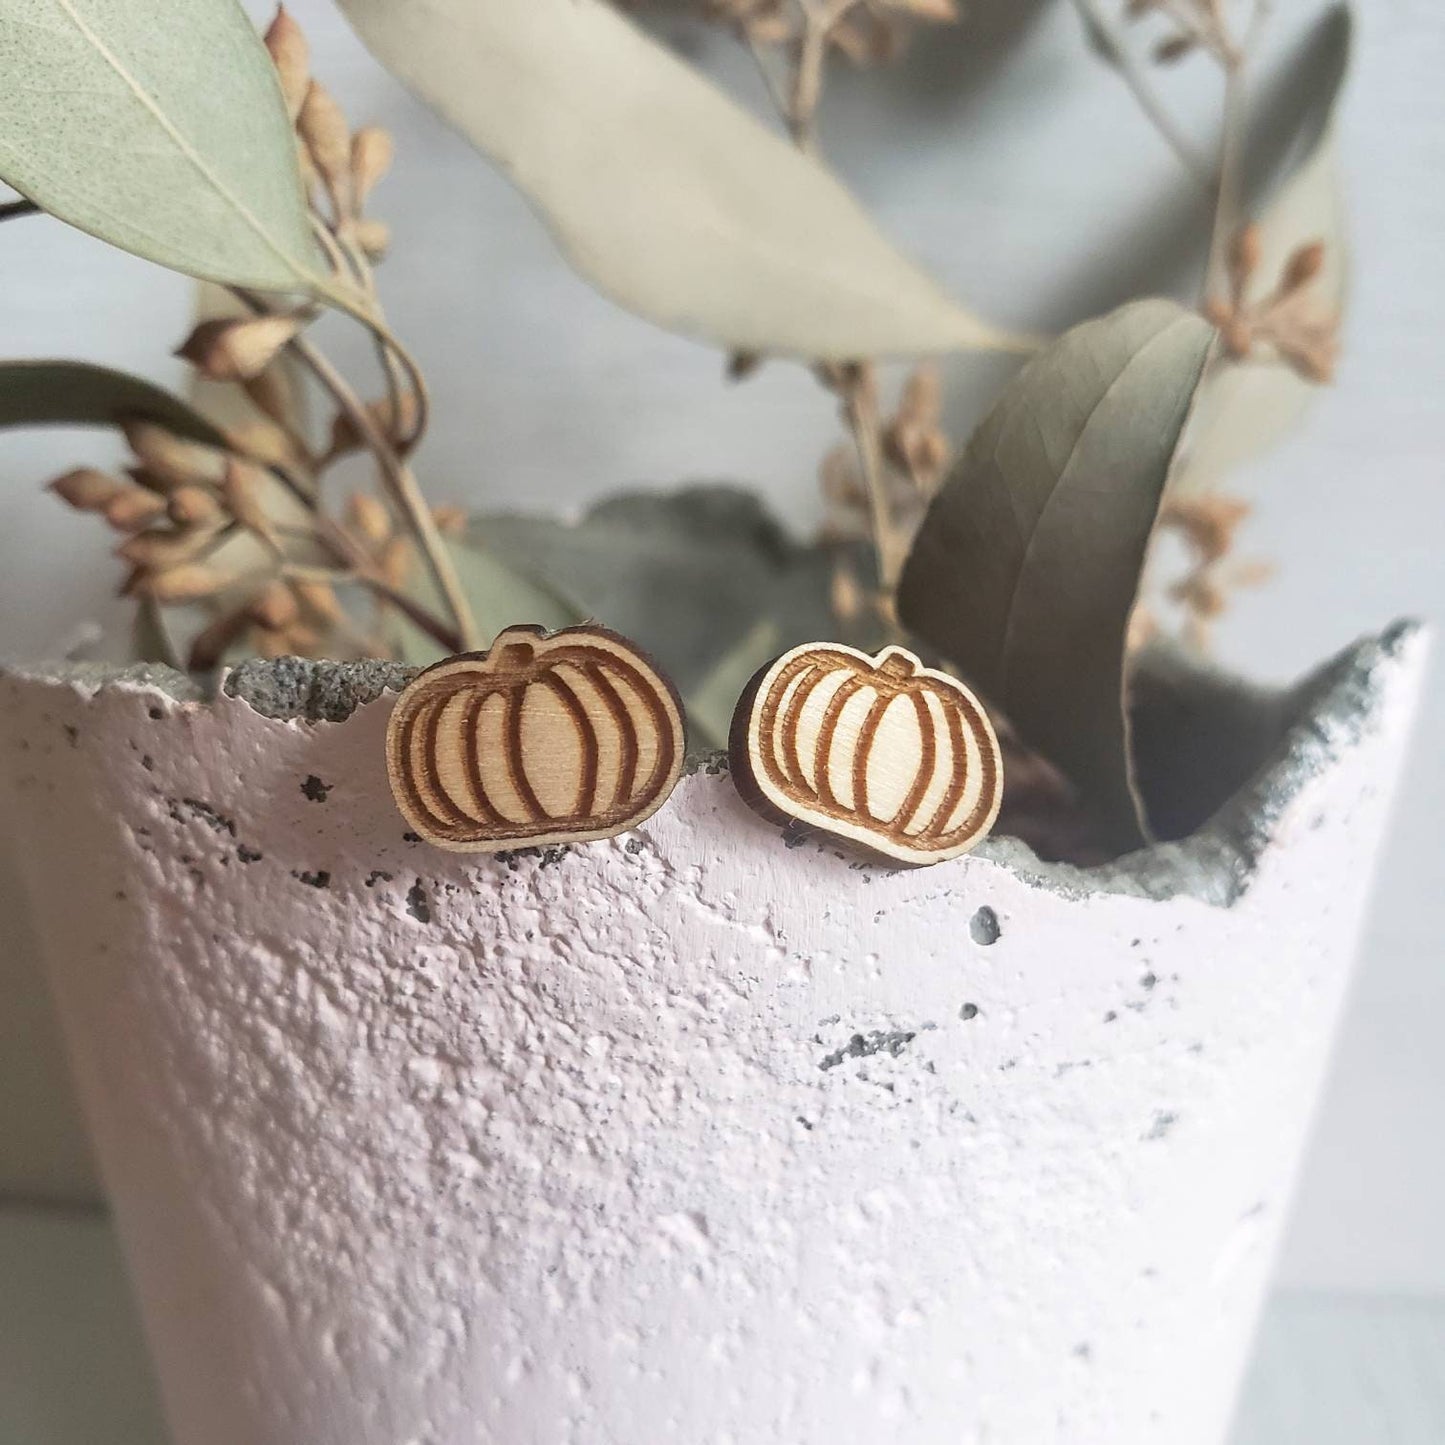 Pumpkin Earrings - Halloween Jewelry - Orange Pumpkin Post Earring